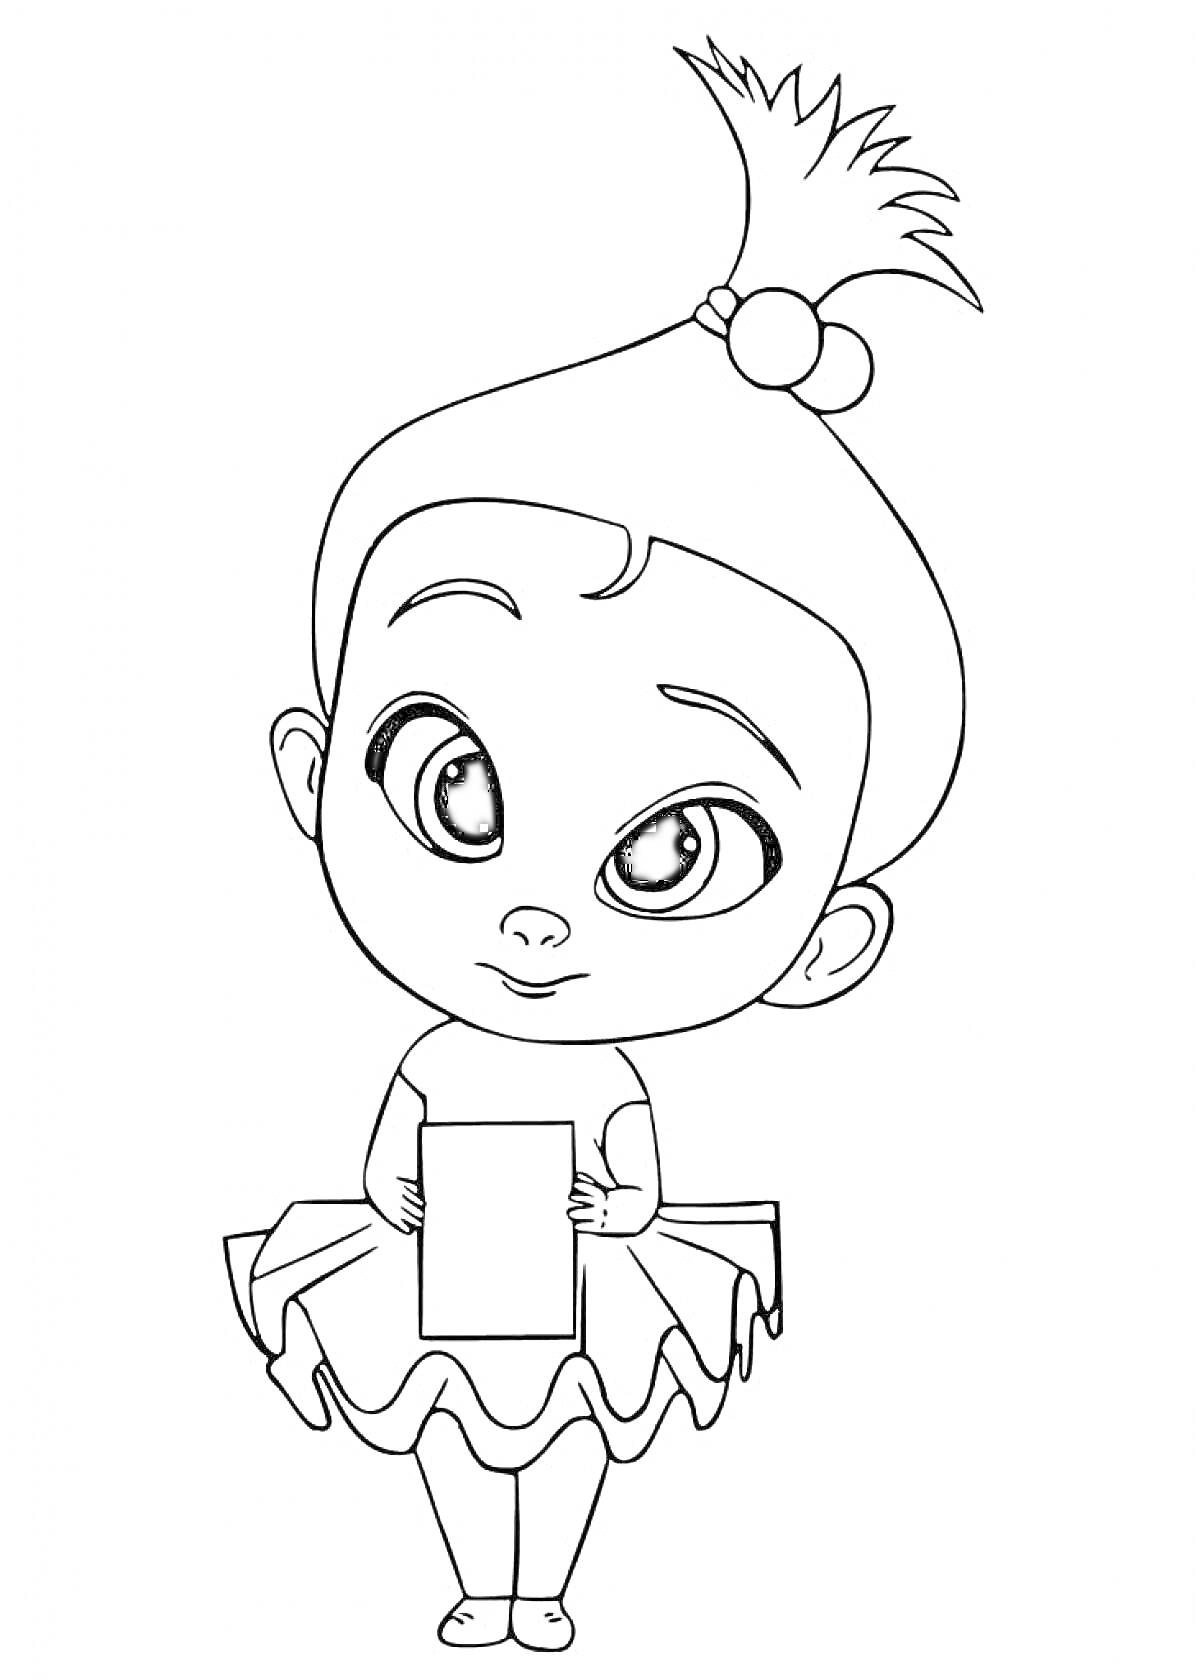 Раскраска Девочка с бантом и пучком, держащая лист бумаги